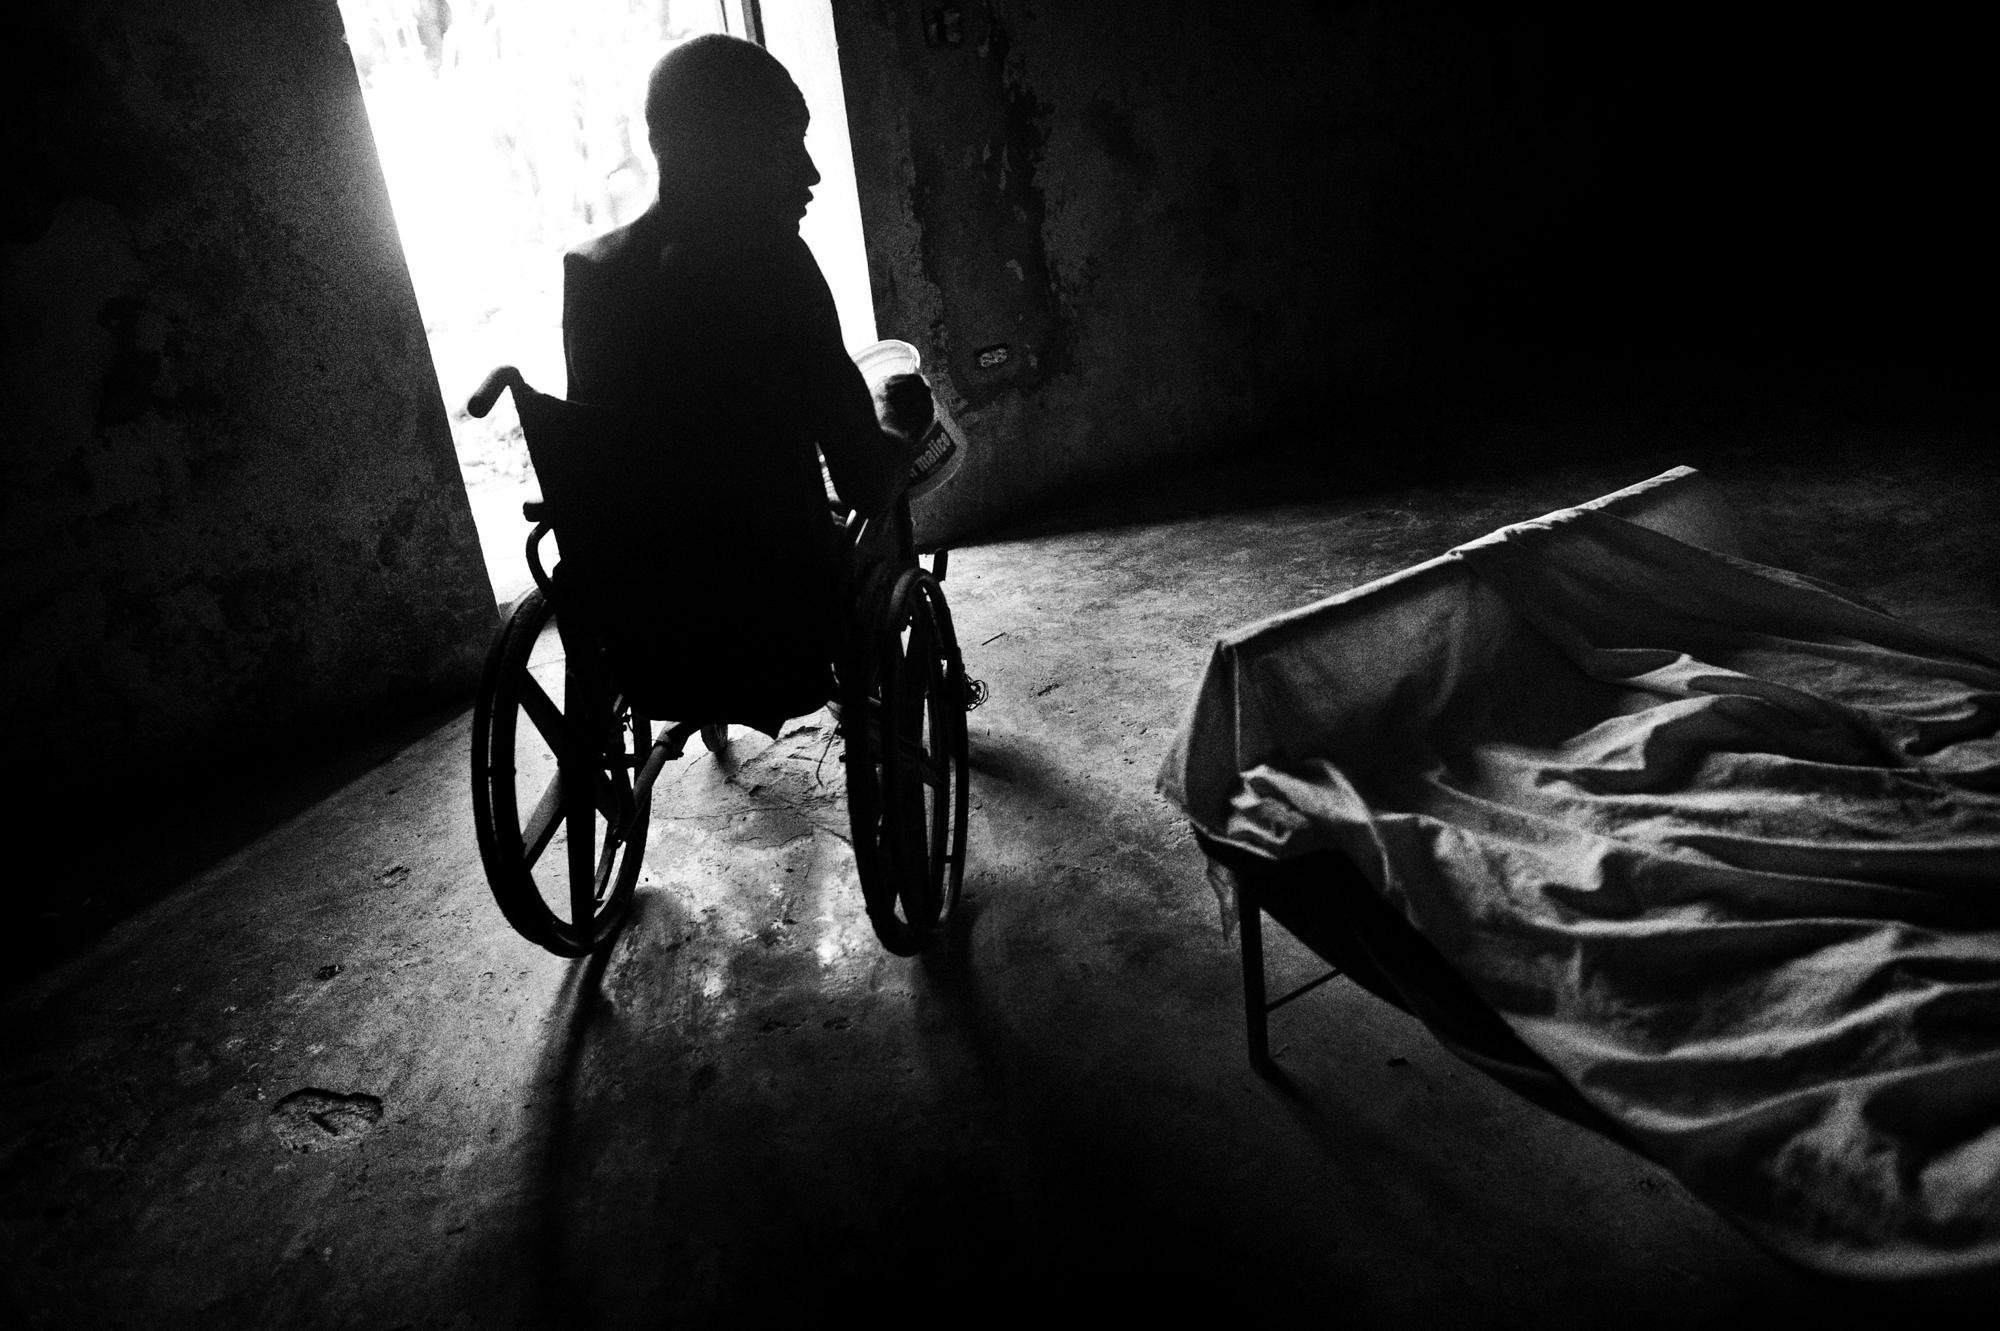 Hospice/ Haiti - Petit Guave, Haiti.
June 2010.
An inmate on a wheel...